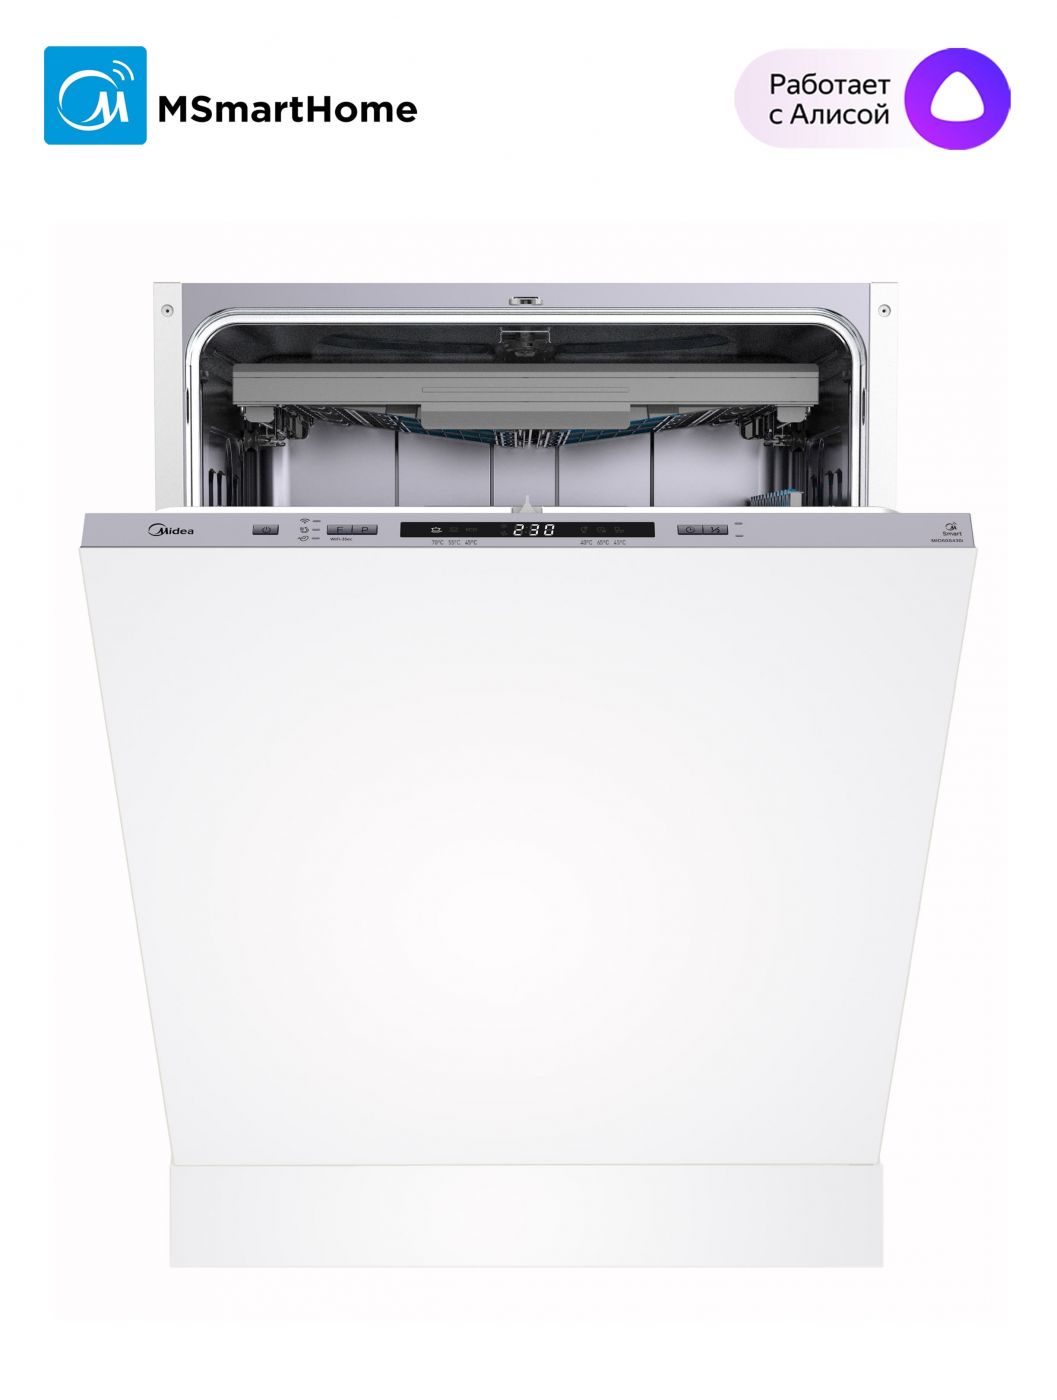 Встраиваемая посудомоечная машина Midea MID60S430i